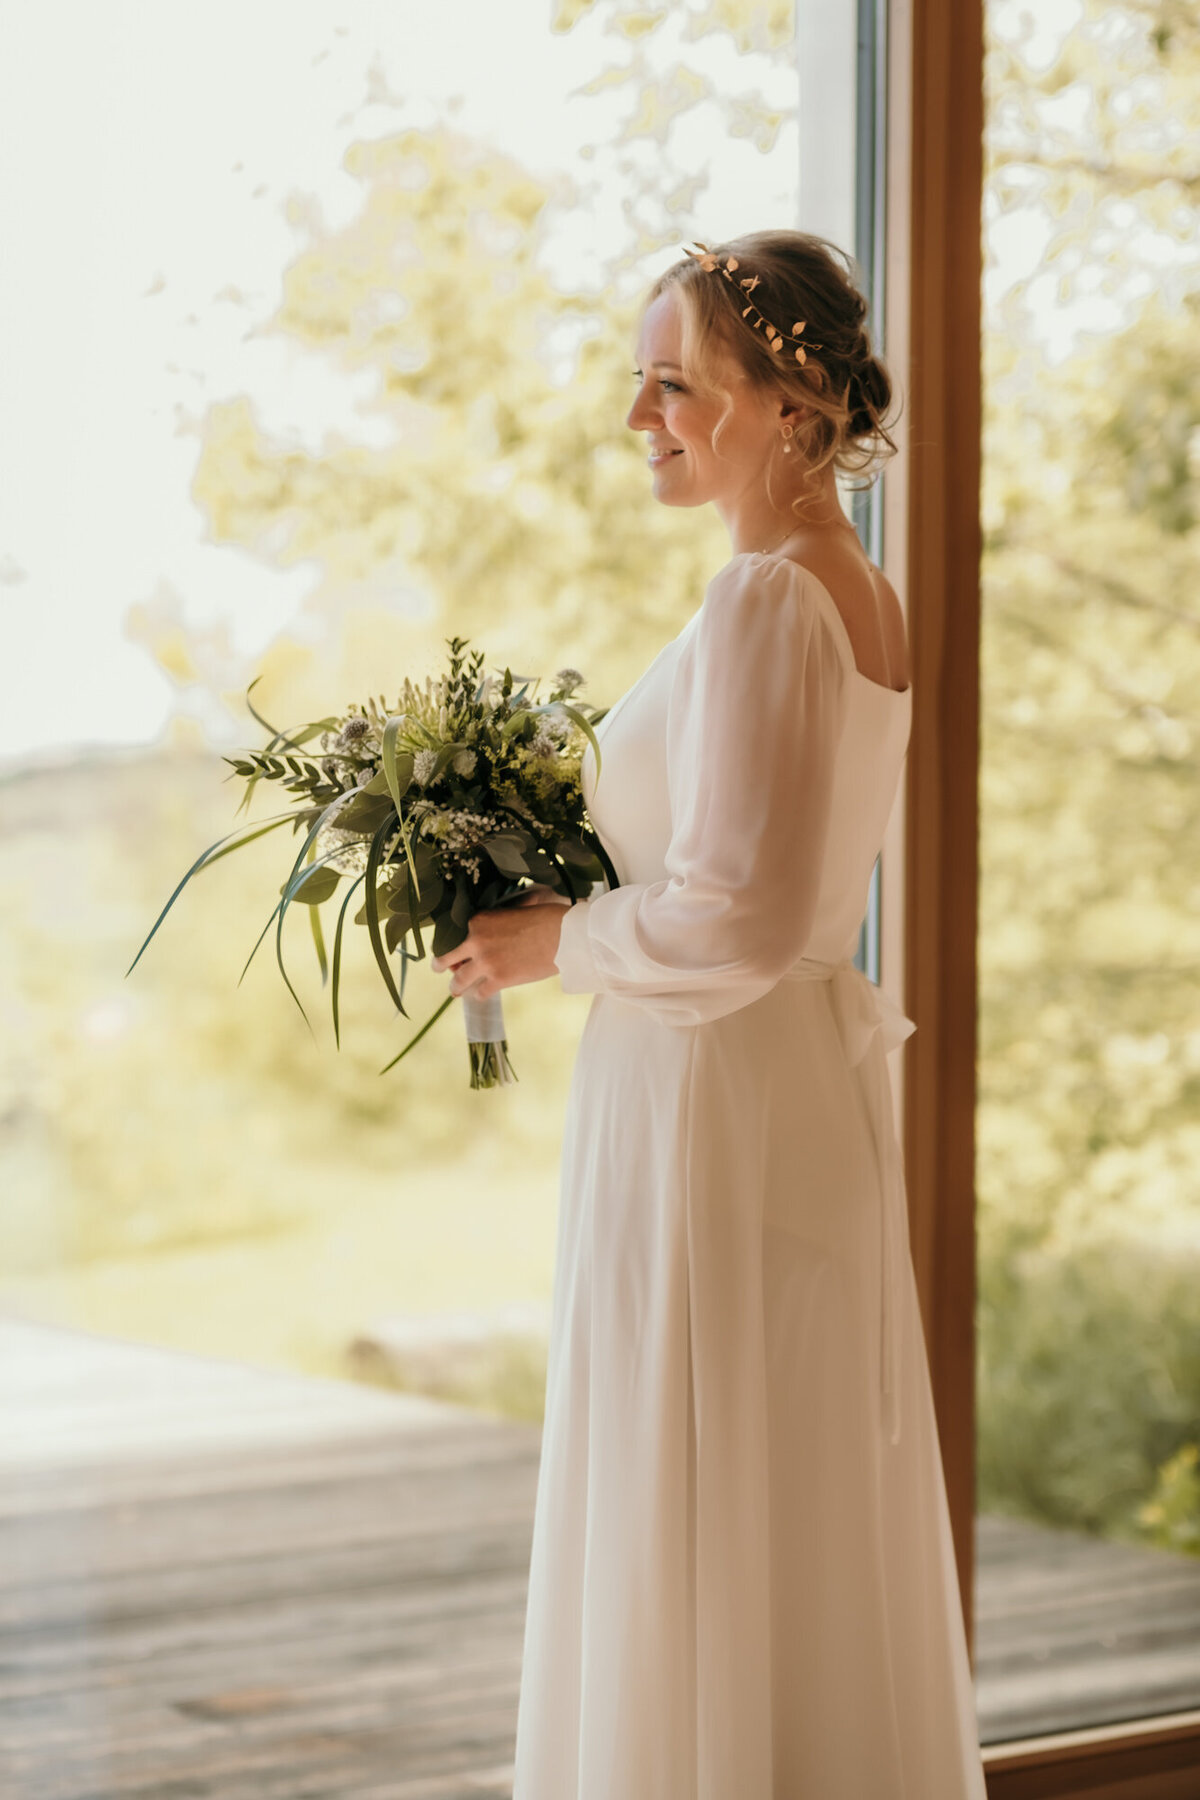 Fertig gestylt blickt die Braut mit ihrem Brautstrauß in den Händen aus einem bodentiefen Fenster.